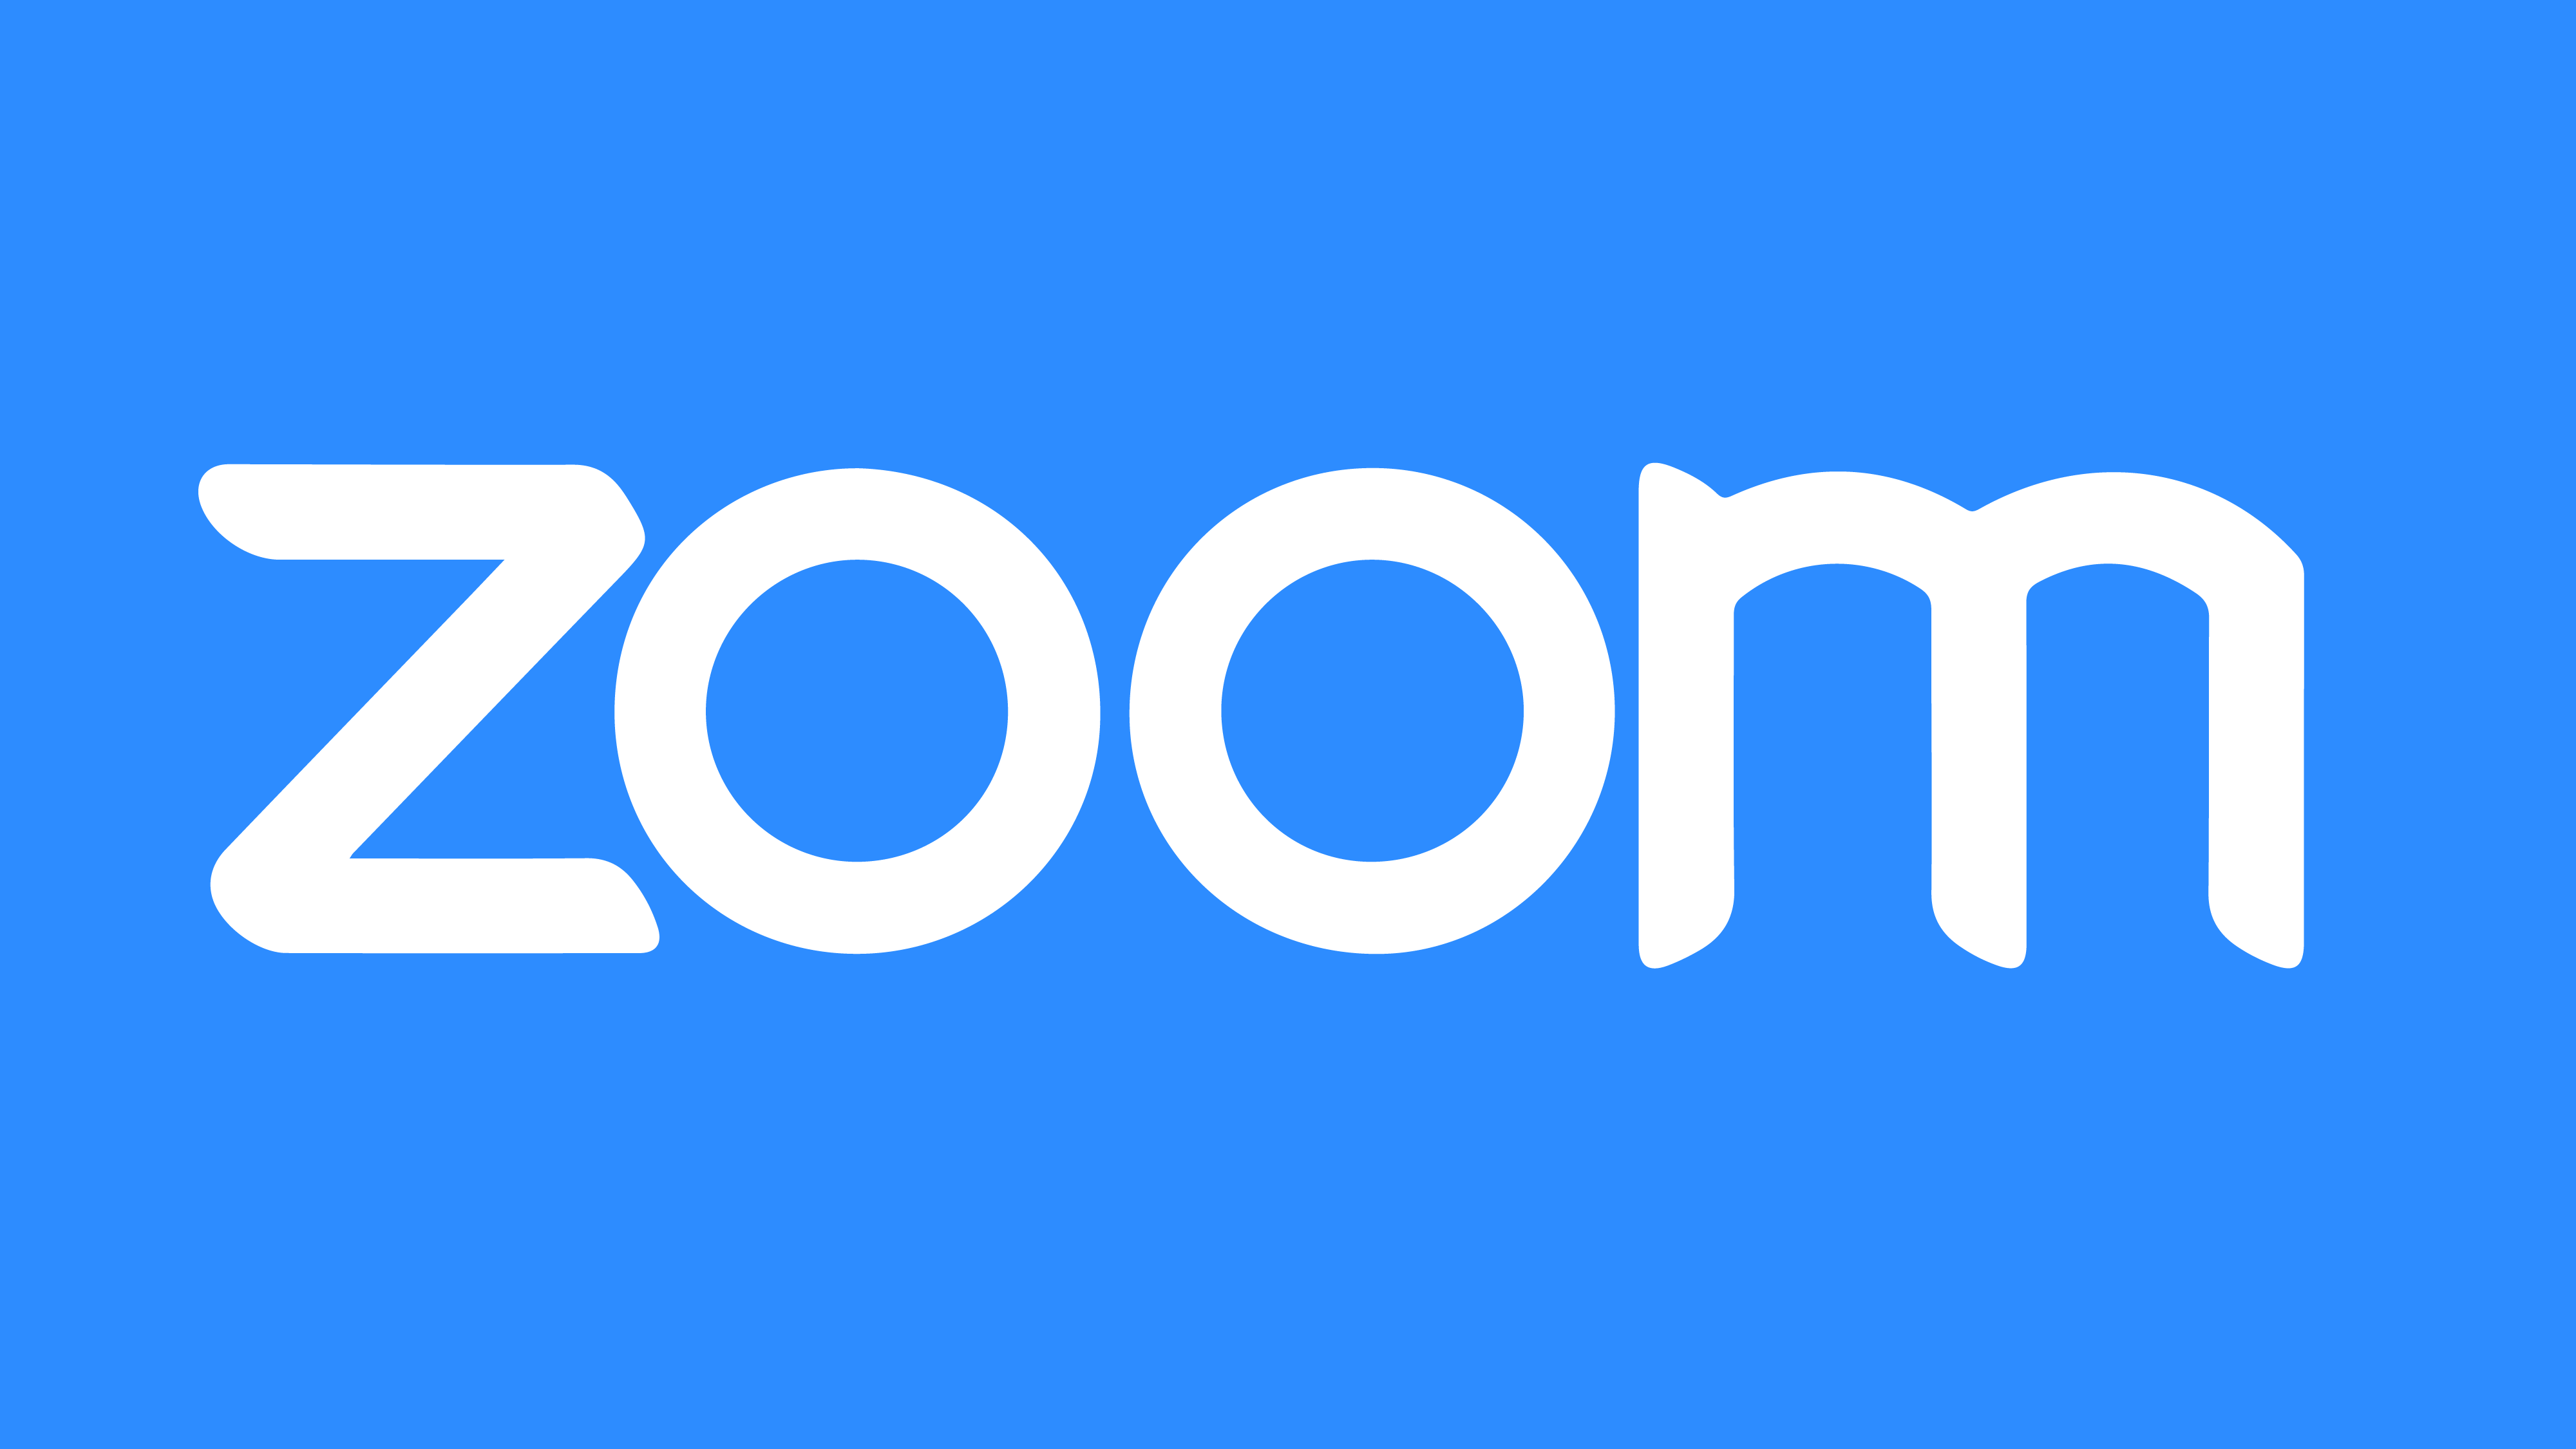 zoom cloud meetings logo